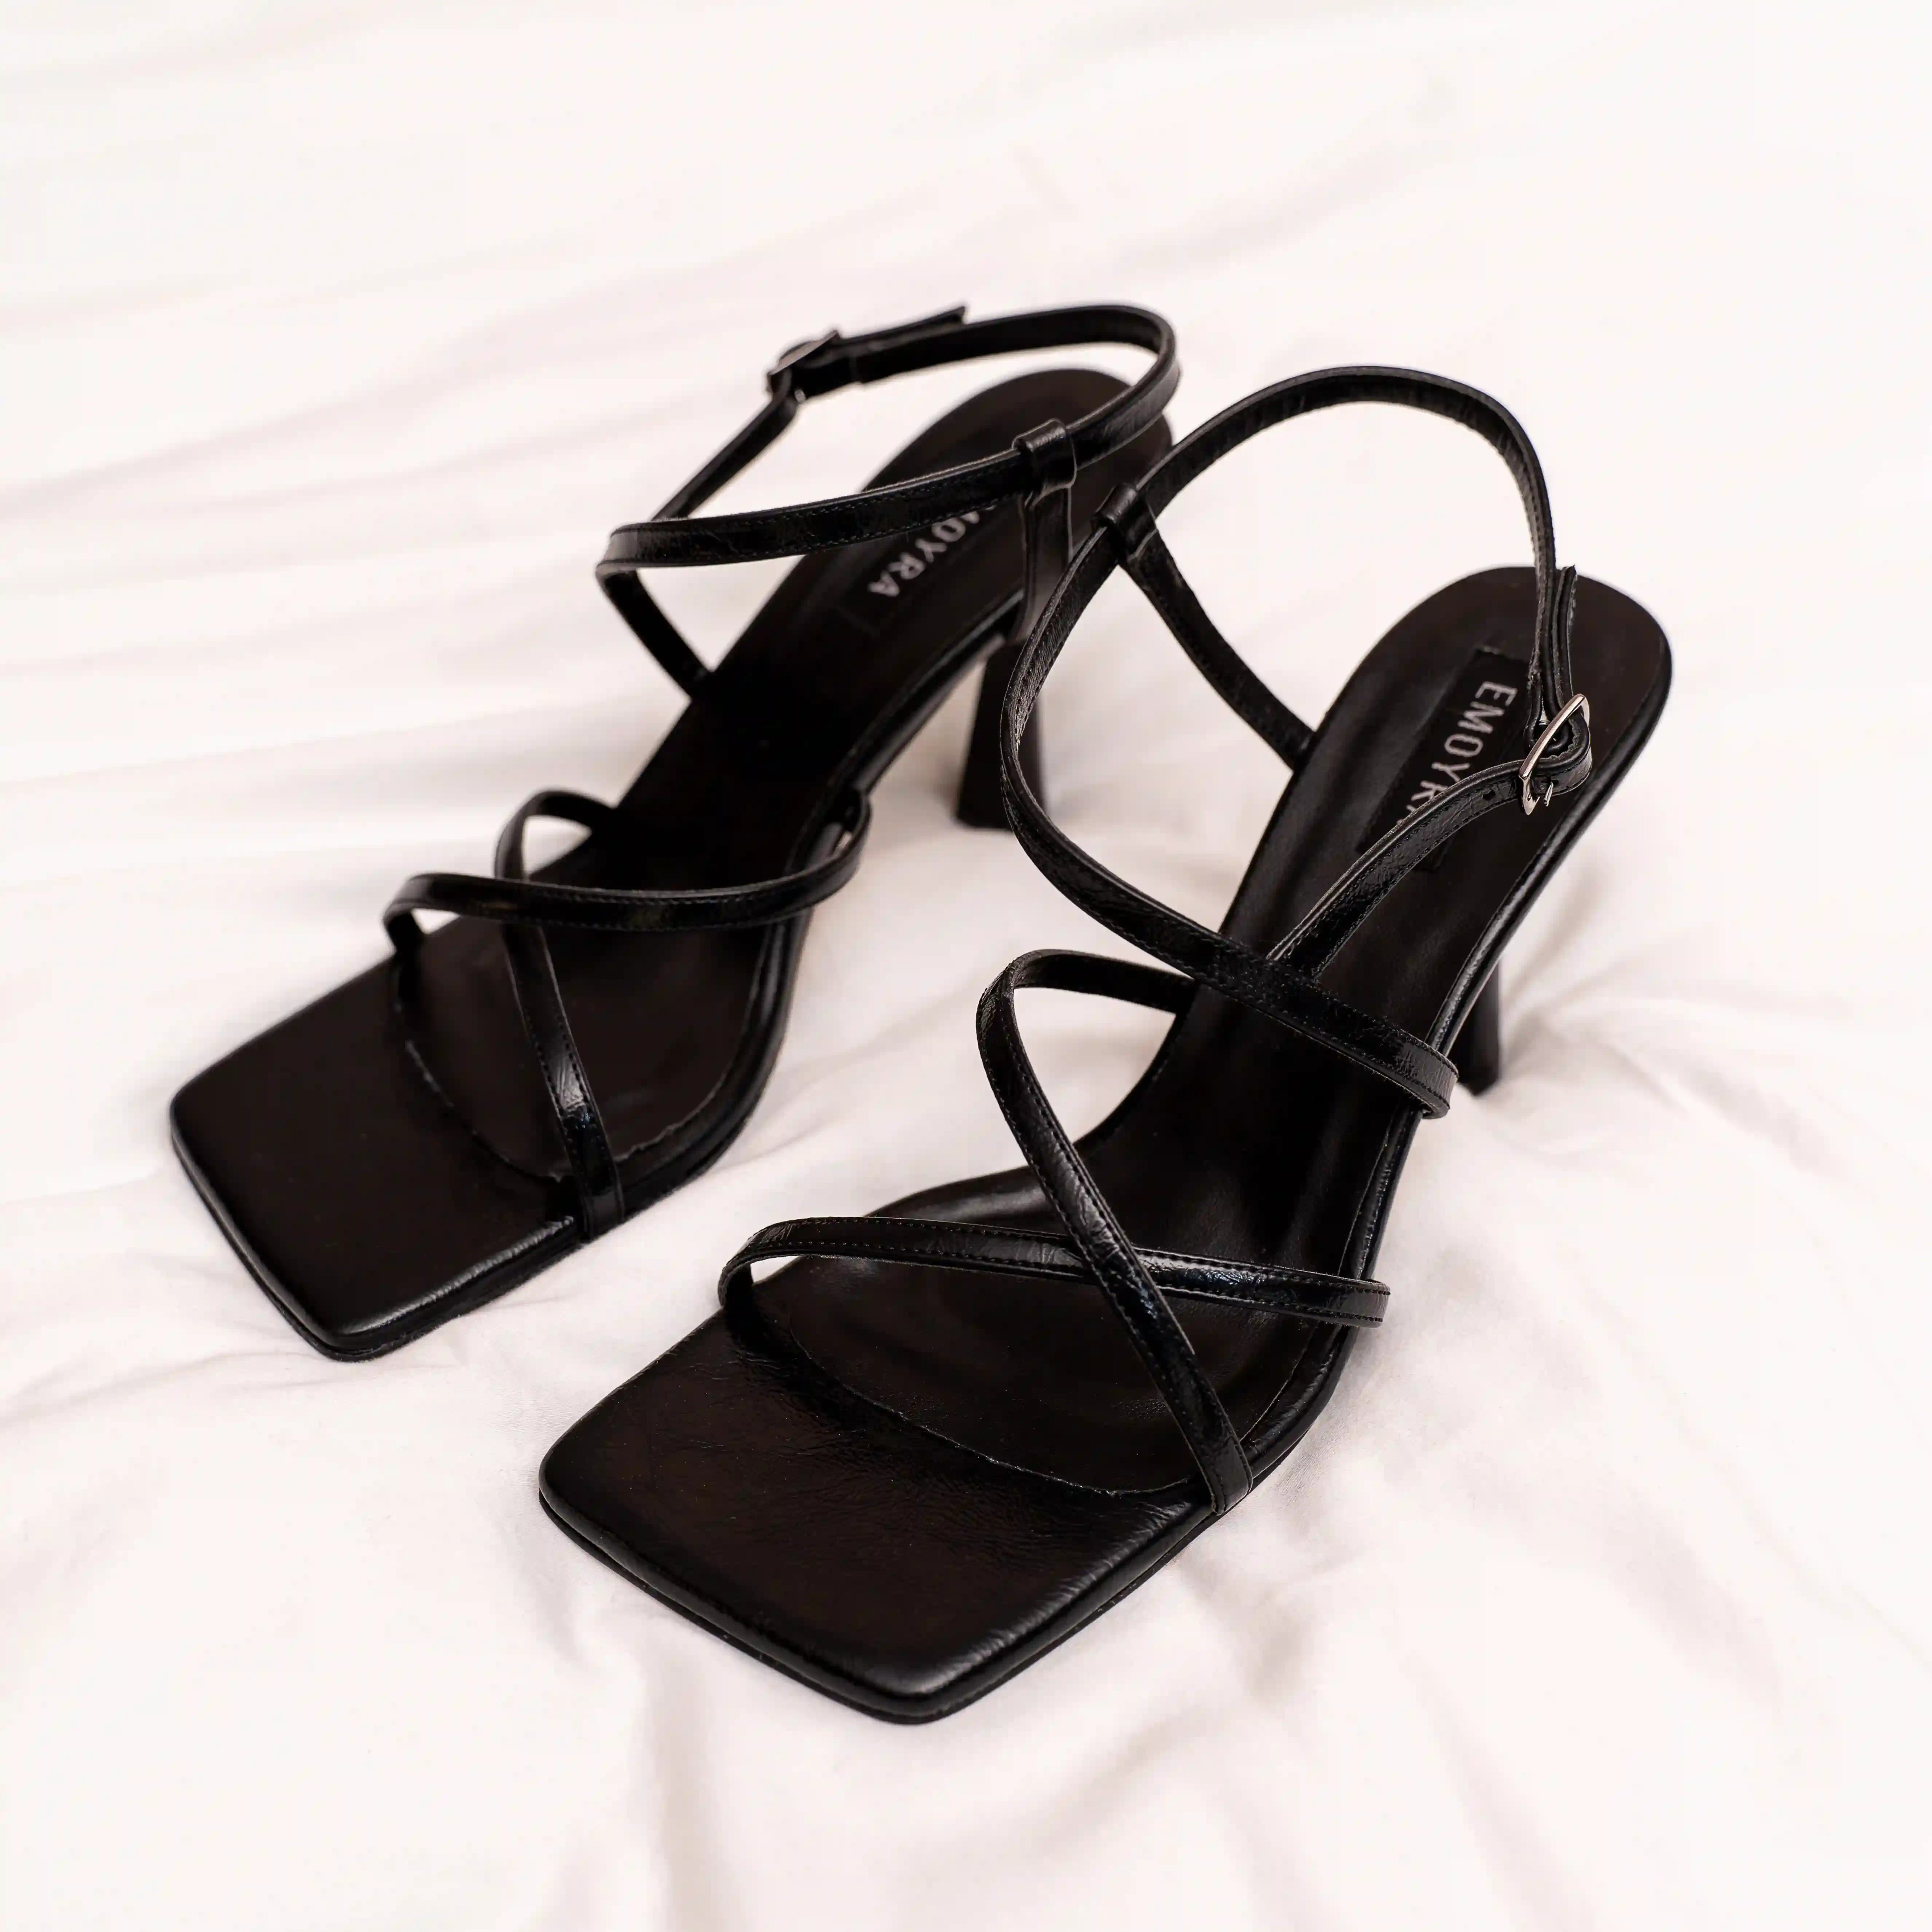 Metalik İnce Yüksek Topuklu Ayakkabı - Siyah